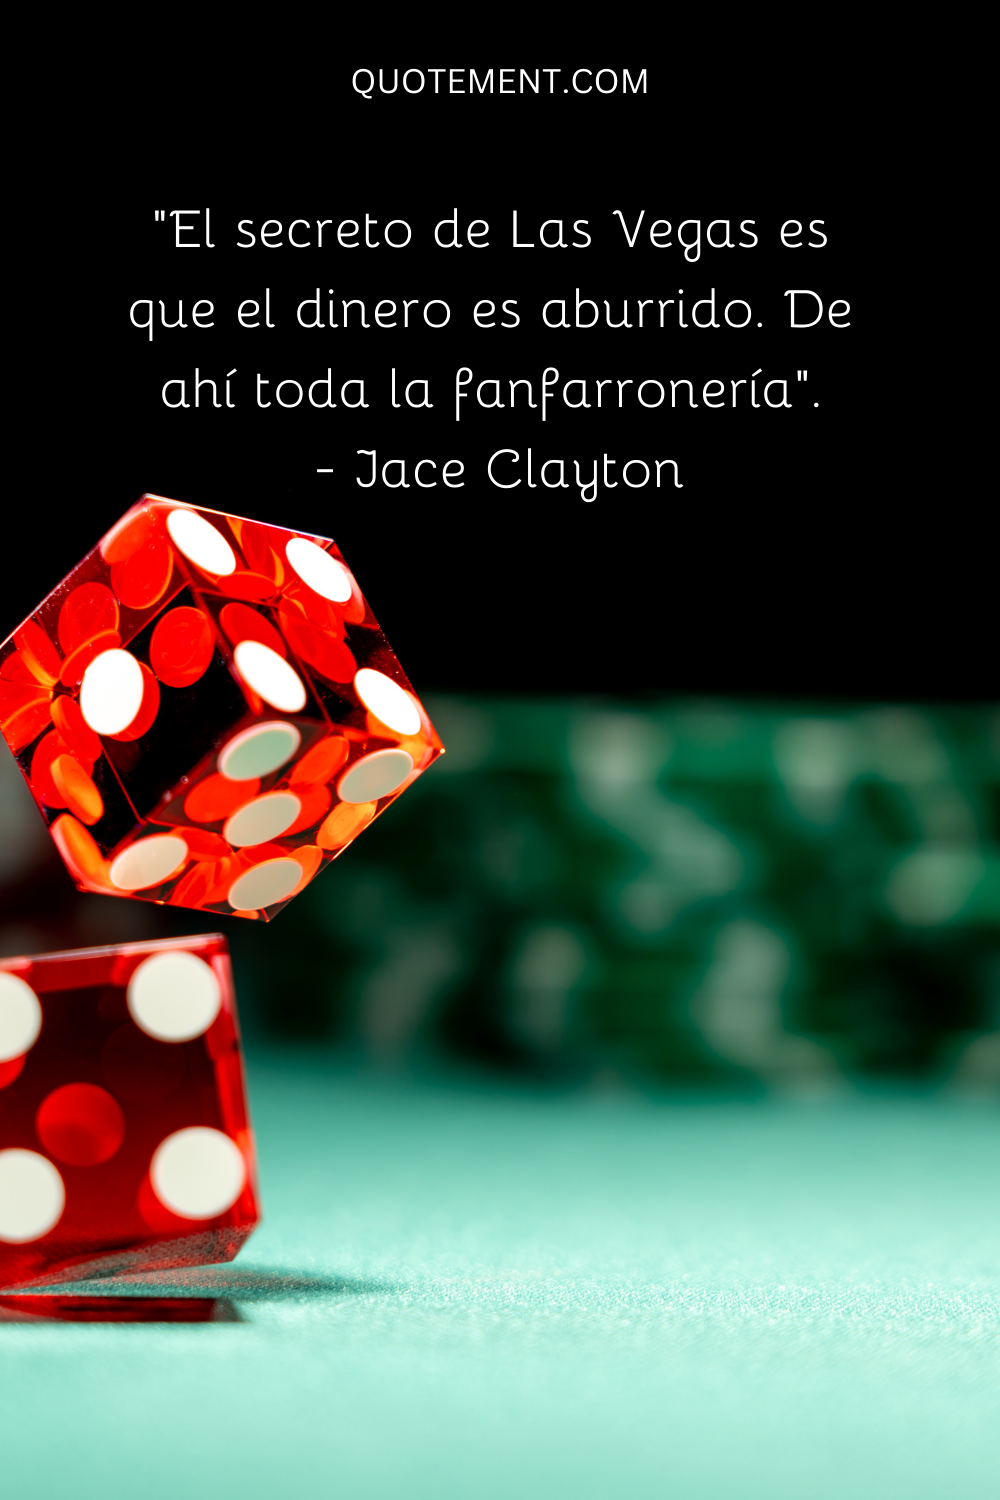 "El secreto de Las Vegas es que el dinero es aburrido. De ahí toda la fanfarronería". - Jace Clayton